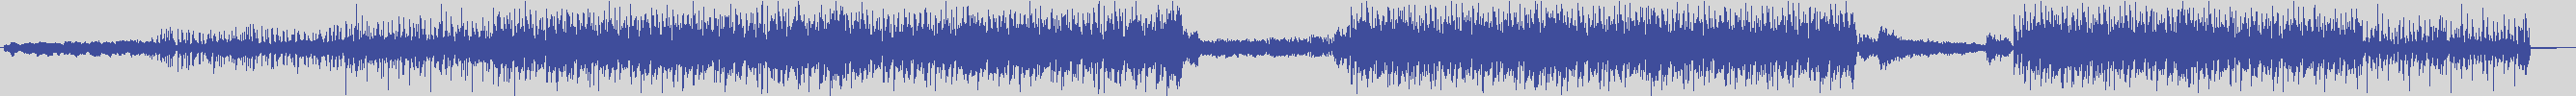 noclouds_chillout [NOC013] Ba Ax - Chanson D' Amour [Original Mix] audio wave form